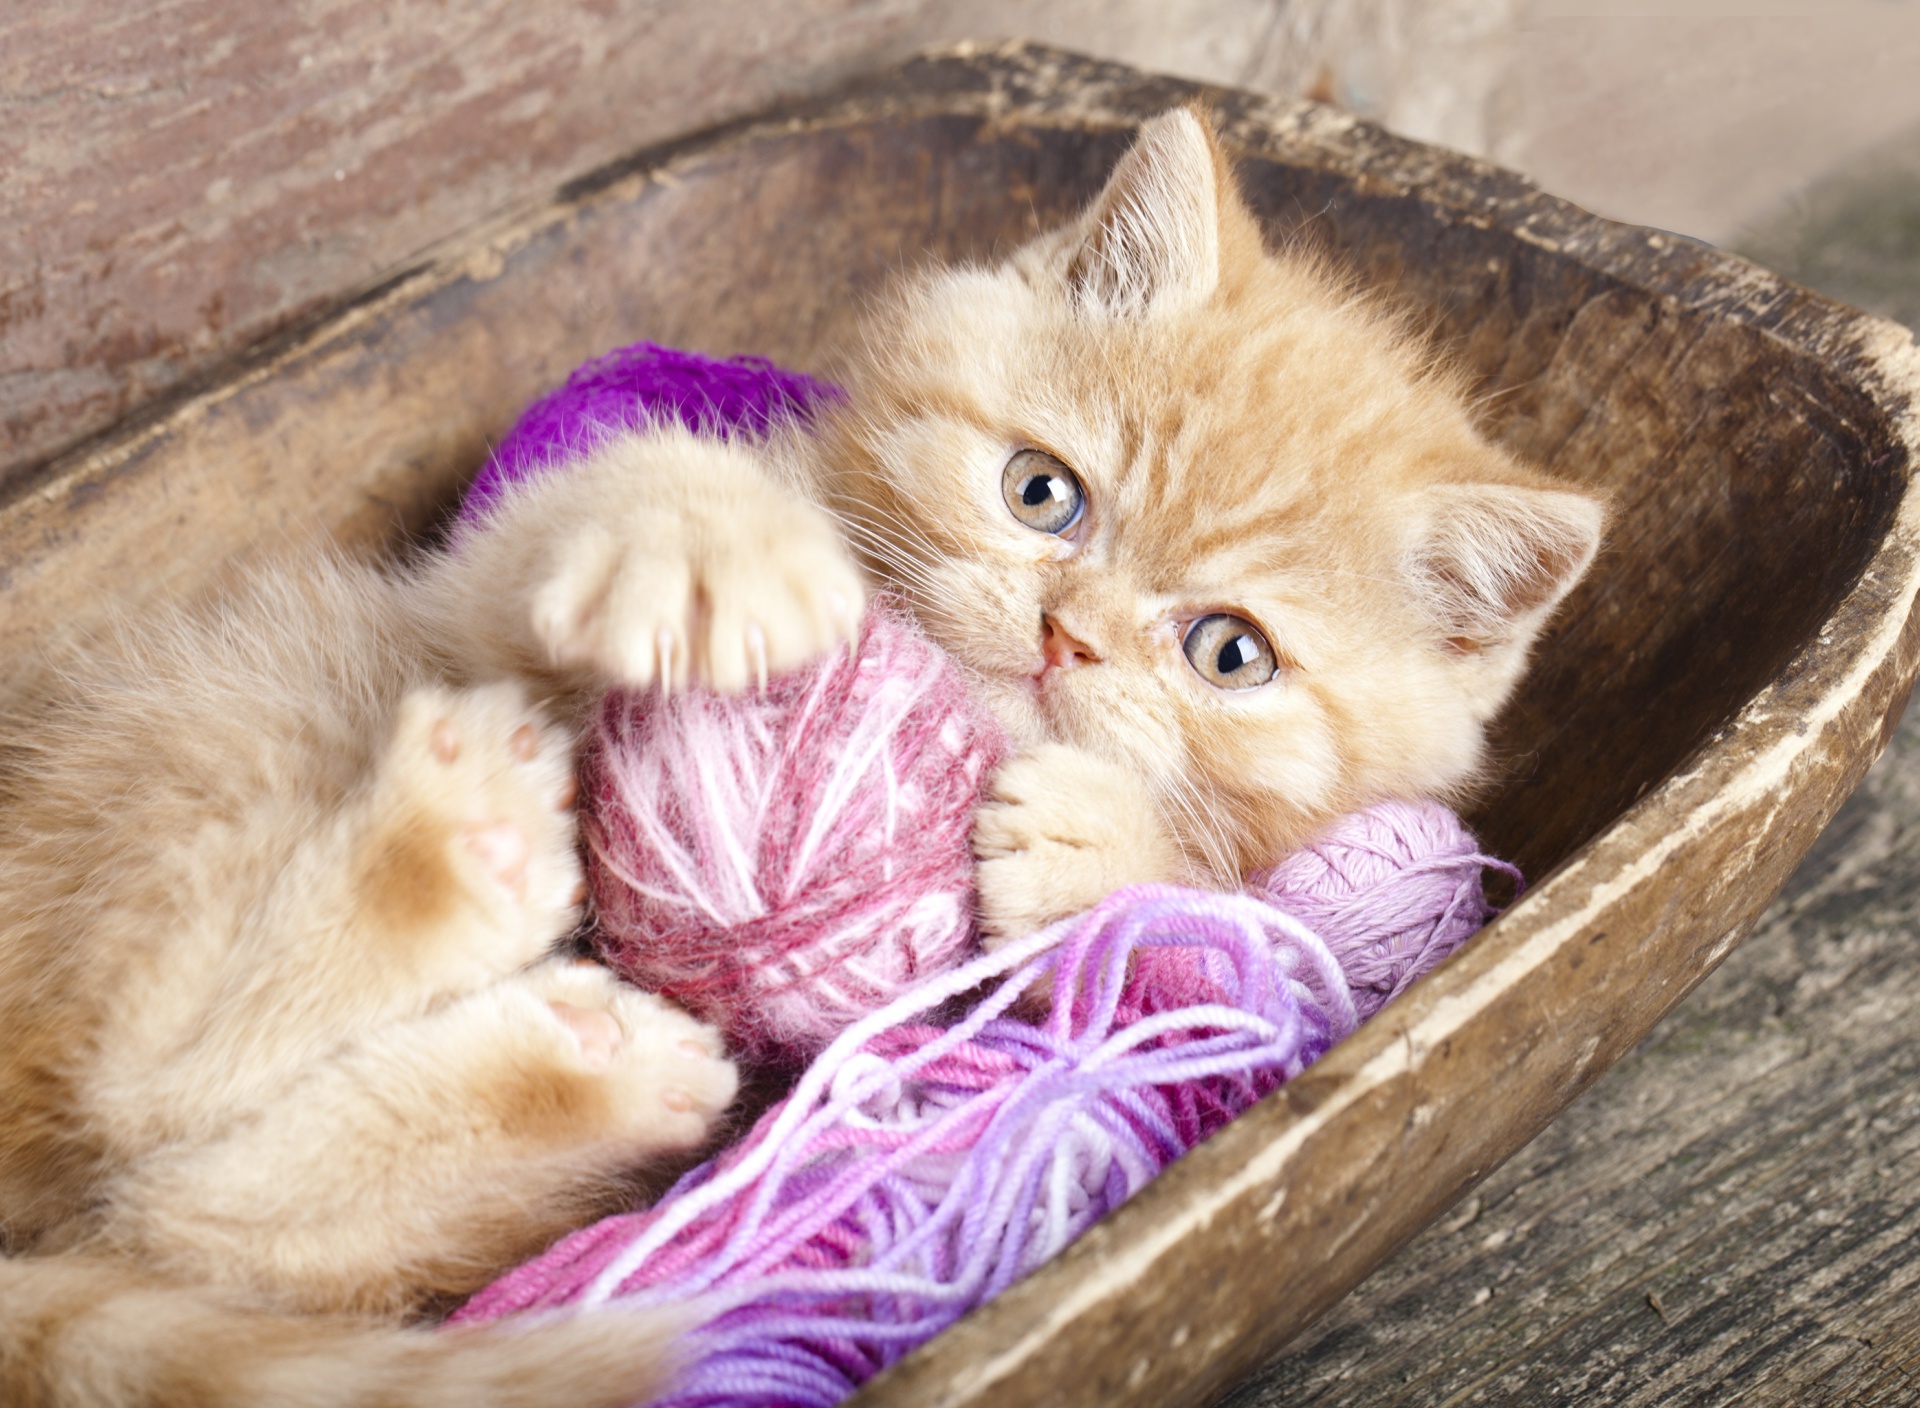 Cute Kitten Playing With A Ball Of Yarn screenshot #1 1920x1408